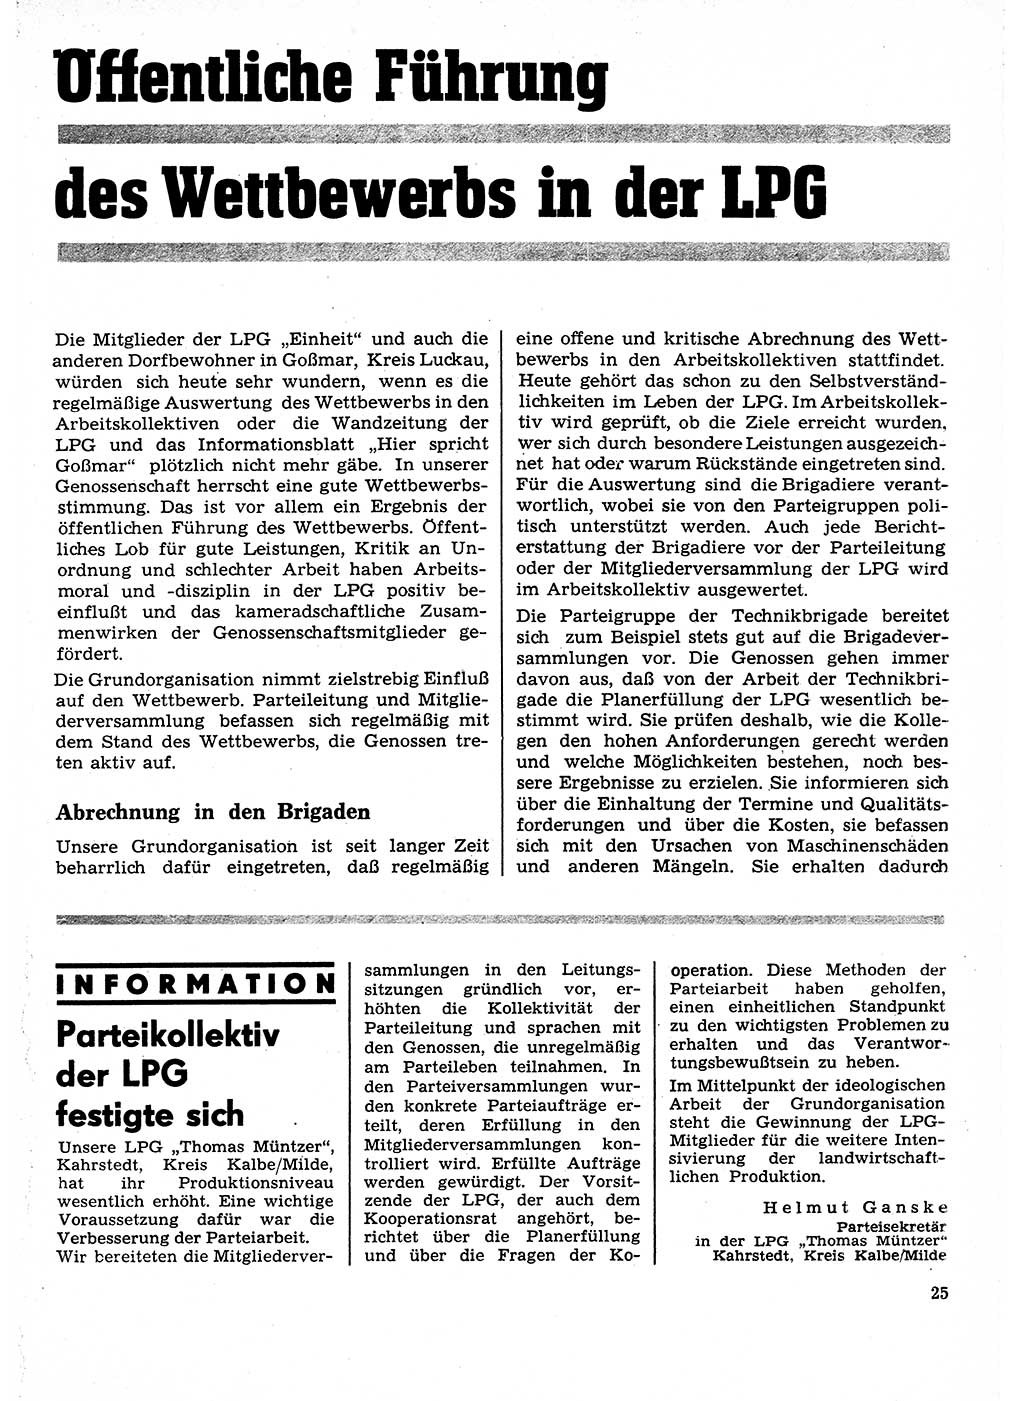 Neuer Weg (NW), Organ des Zentralkomitees (ZK) der SED (Sozialistische Einheitspartei Deutschlands) für Fragen des Parteilebens, 27. Jahrgang [Deutsche Demokratische Republik (DDR)] 1972, Seite 25 (NW ZK SED DDR 1972, S. 25)